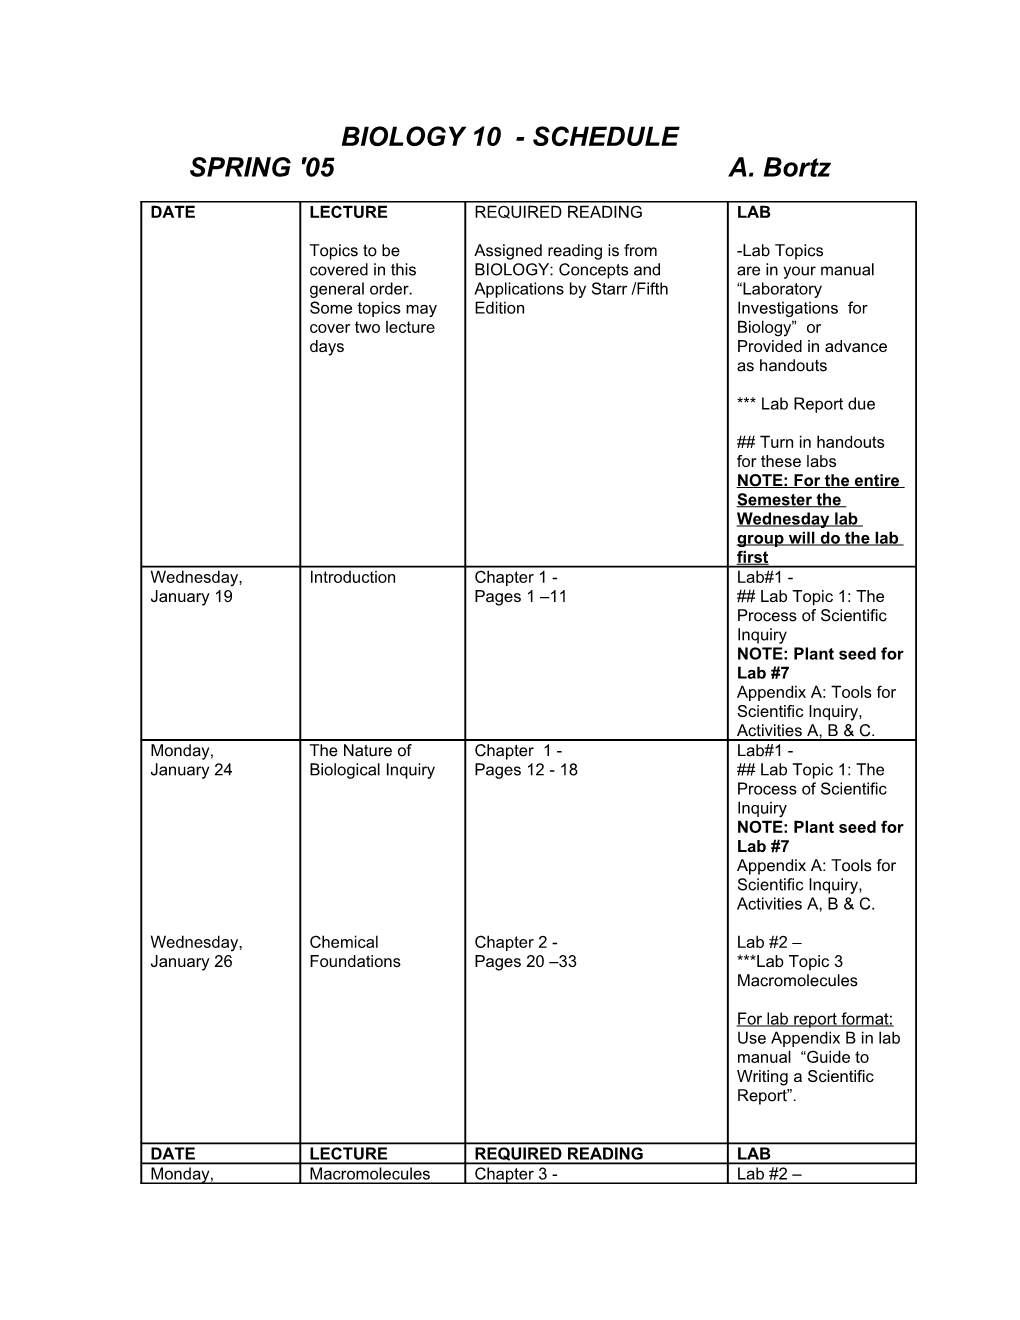 Biology 10 - Class Schedule